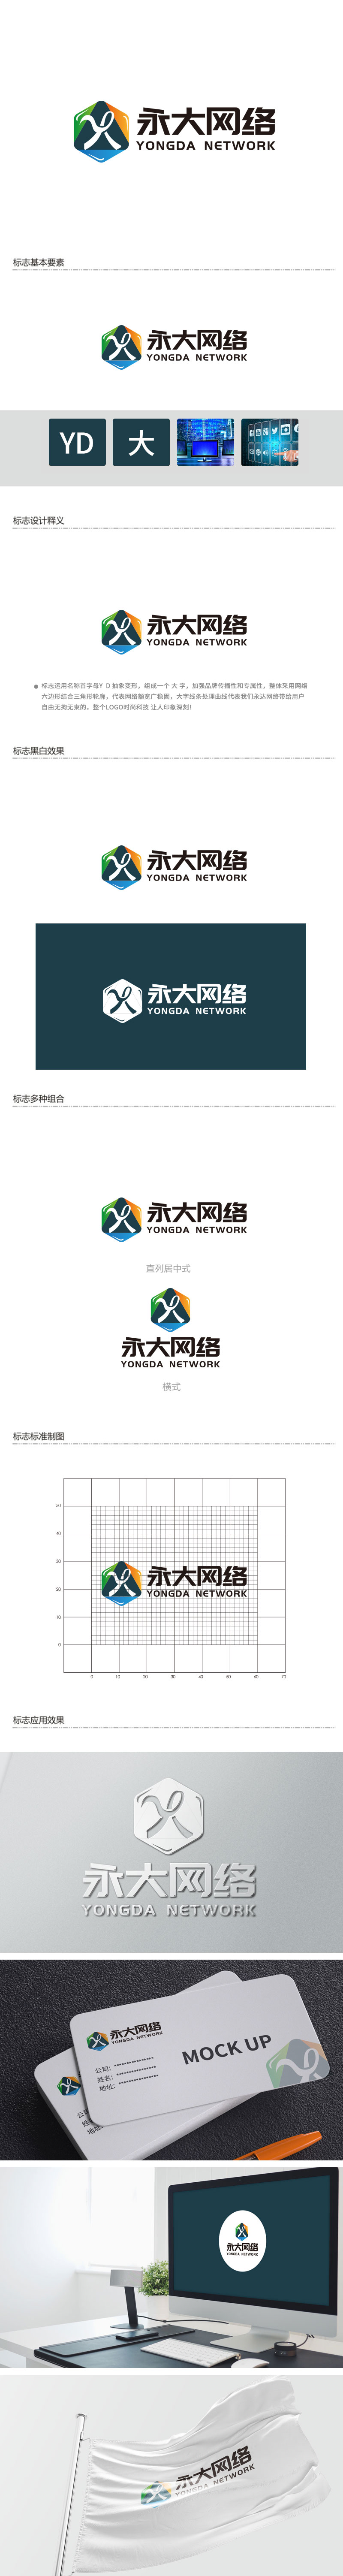 徐山的永大网络logo设计